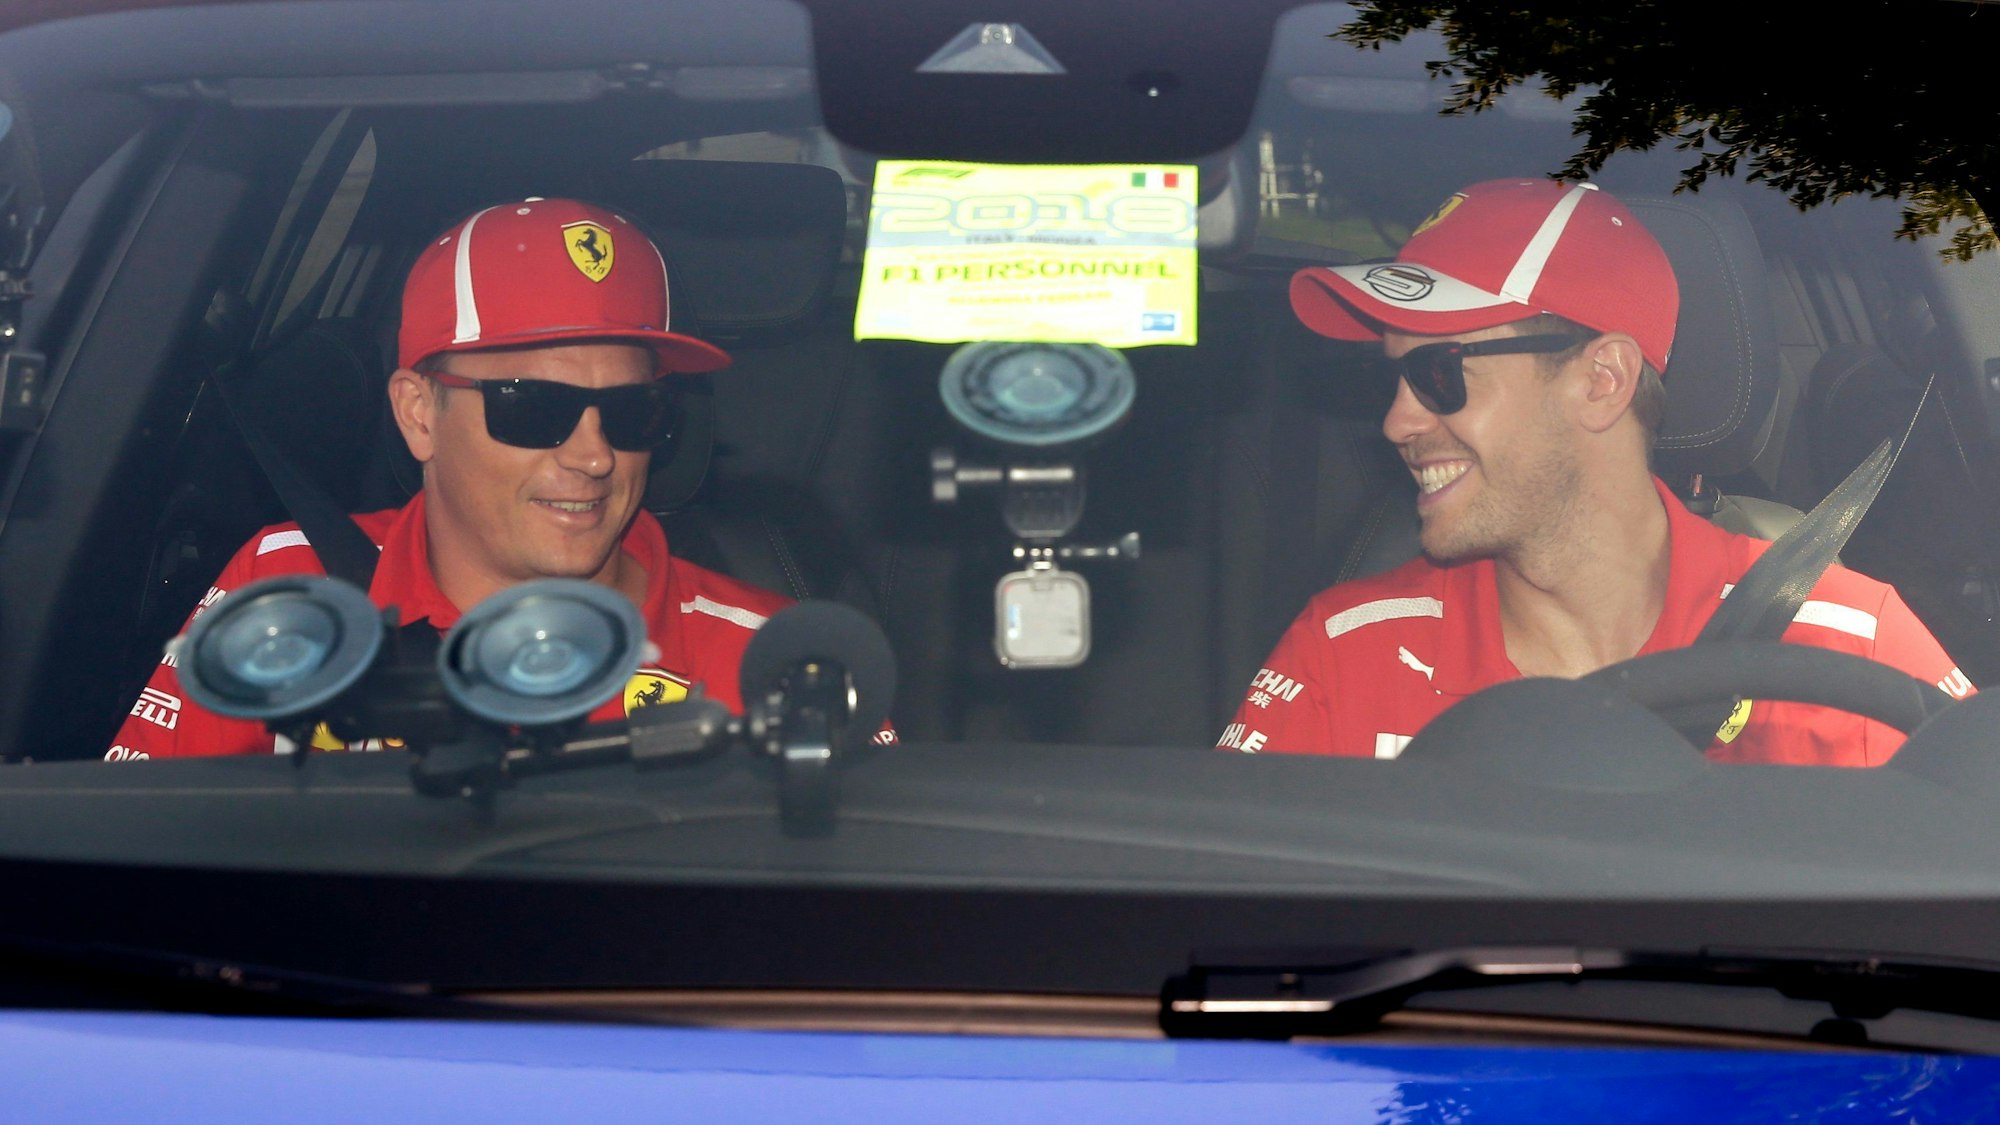 Vor der Pressekonferenz des Weltverbands zum Grand Prix von Italien in Monza 2018 sitzen die damaligen Ferrari-Piloten Sebastian Vettel (r) und Kimi Räikkönen im Auto.